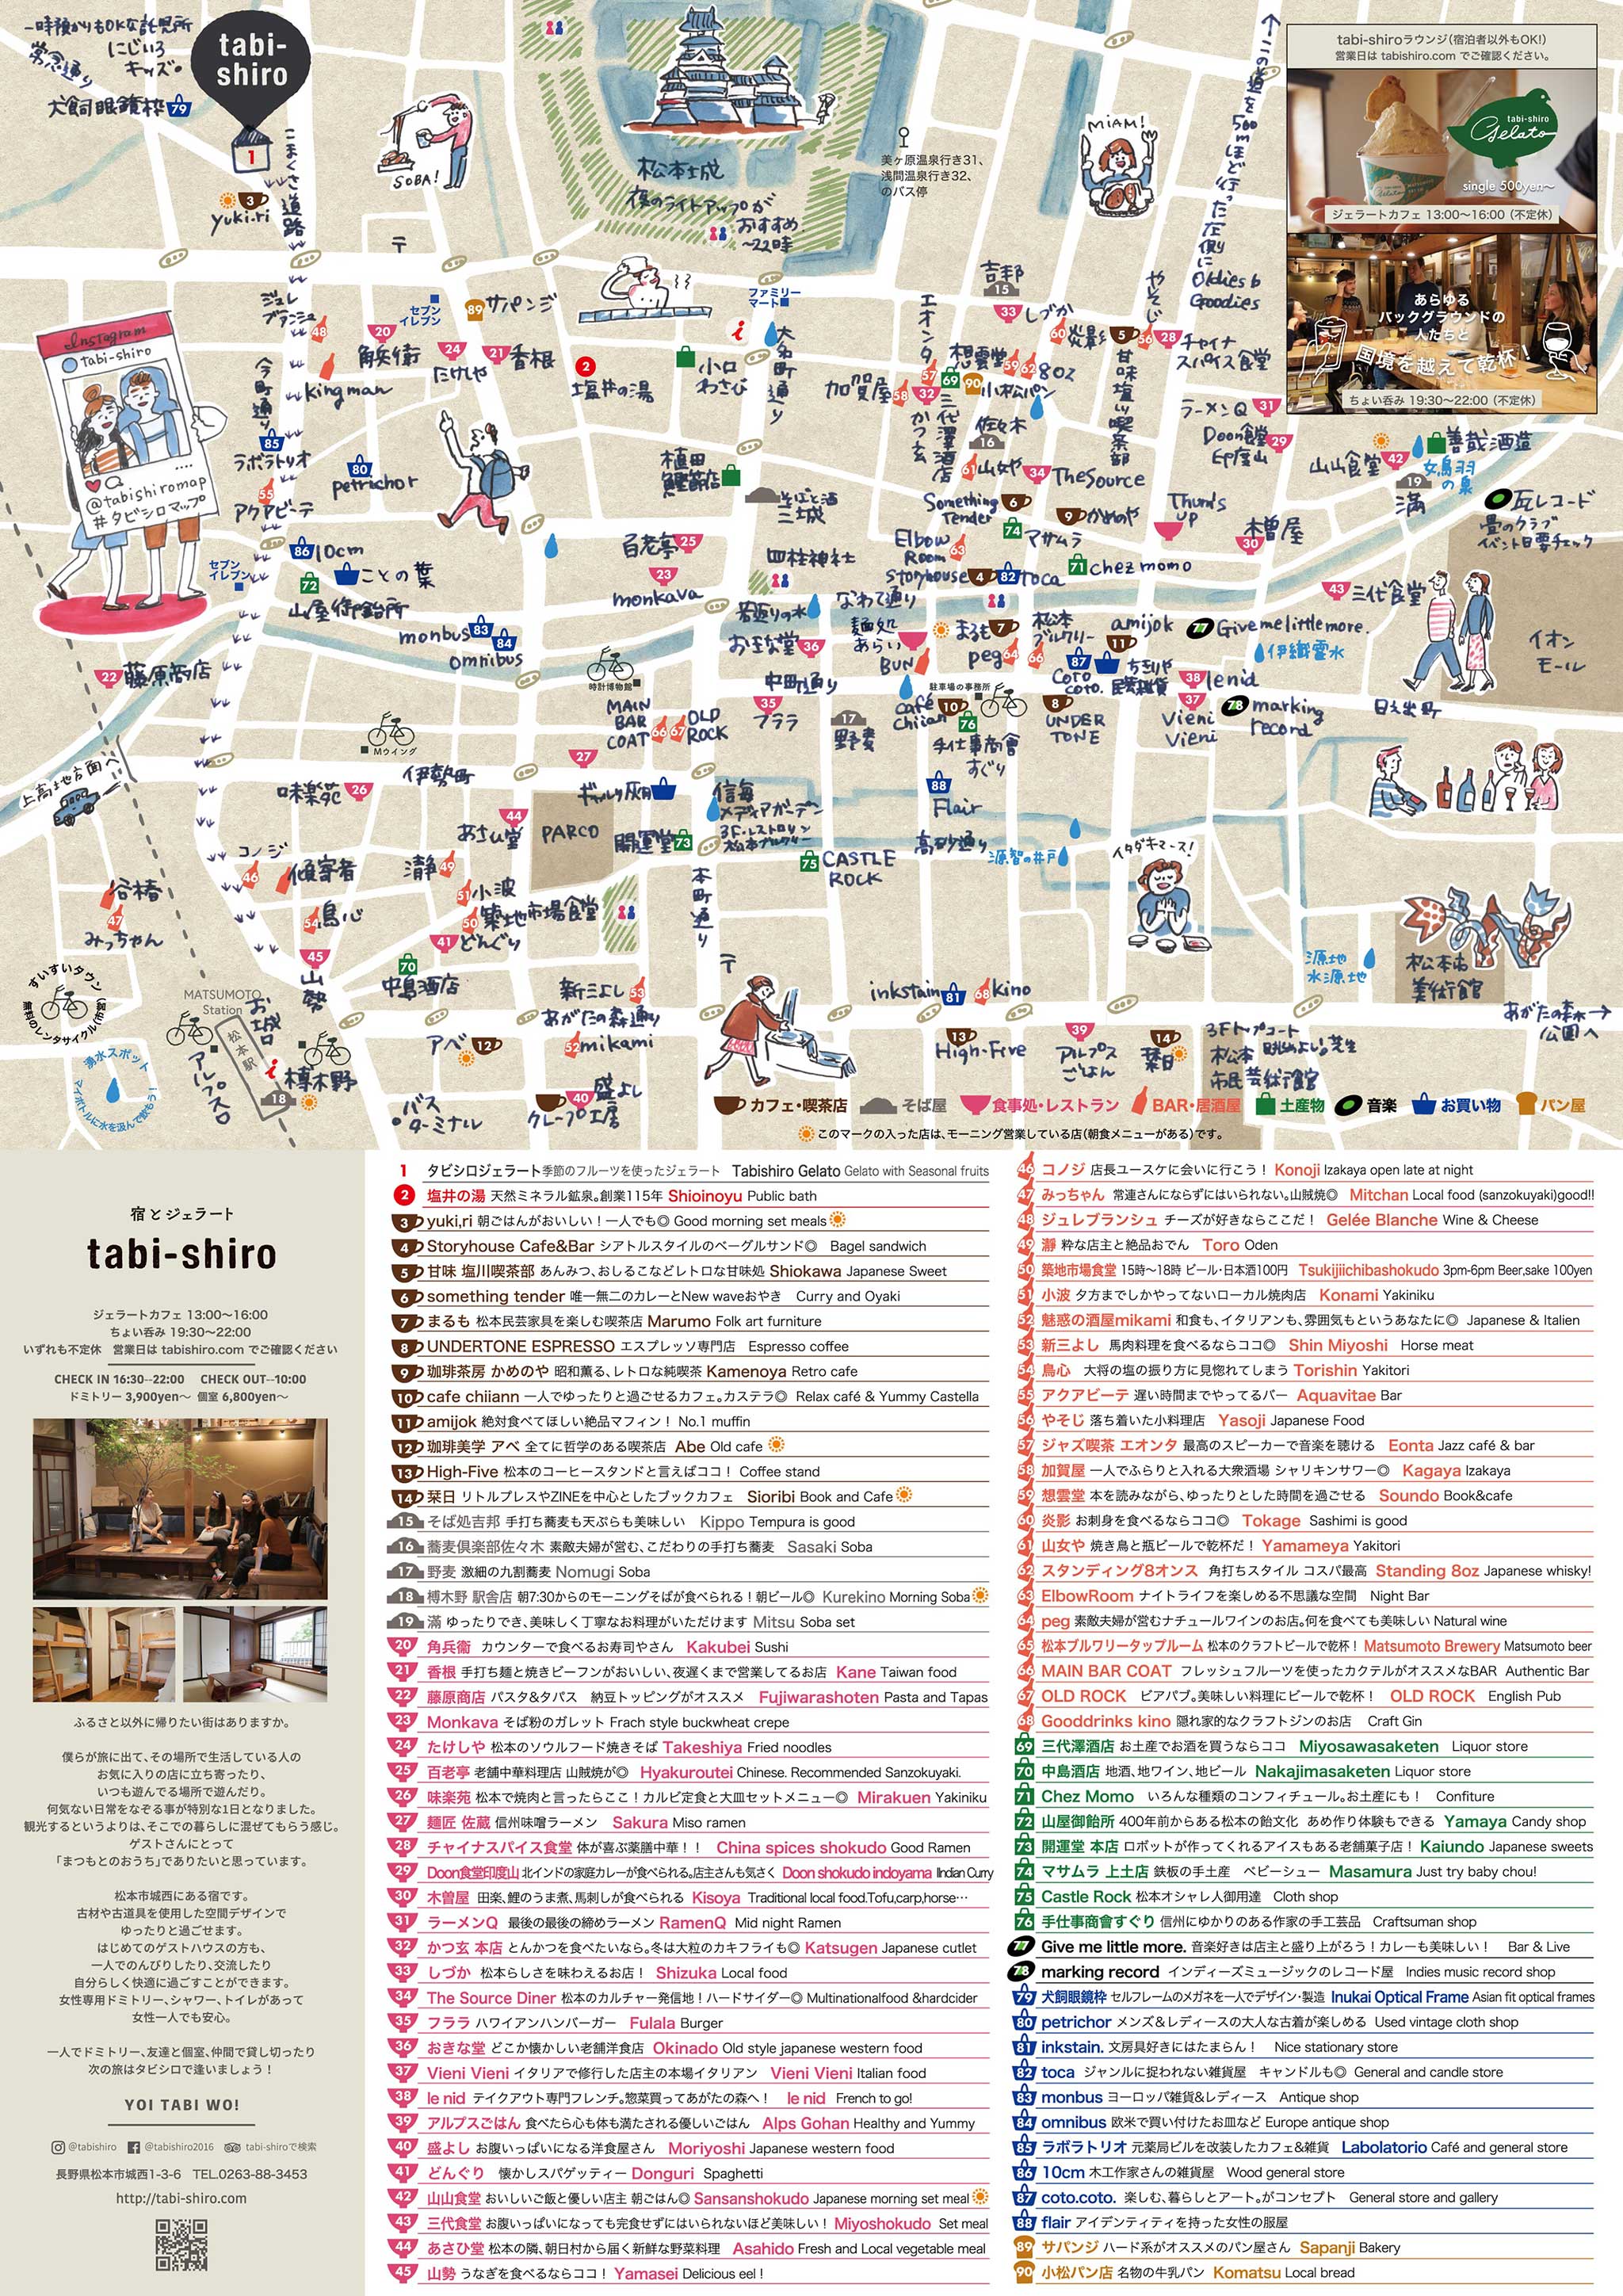 松本散策マップ Tabi Shiro タビシロ 長野県松本市のゲストハウス ホステル